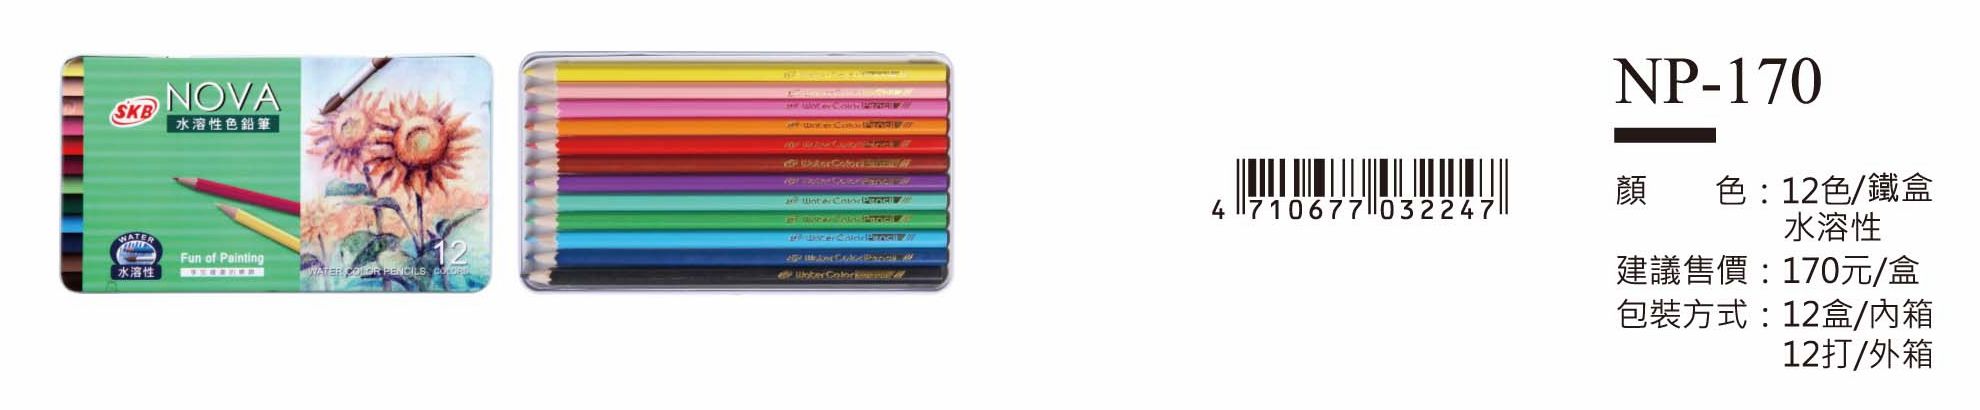 SKB色鉛筆-12色(鐵盒)-起訂量1外箱